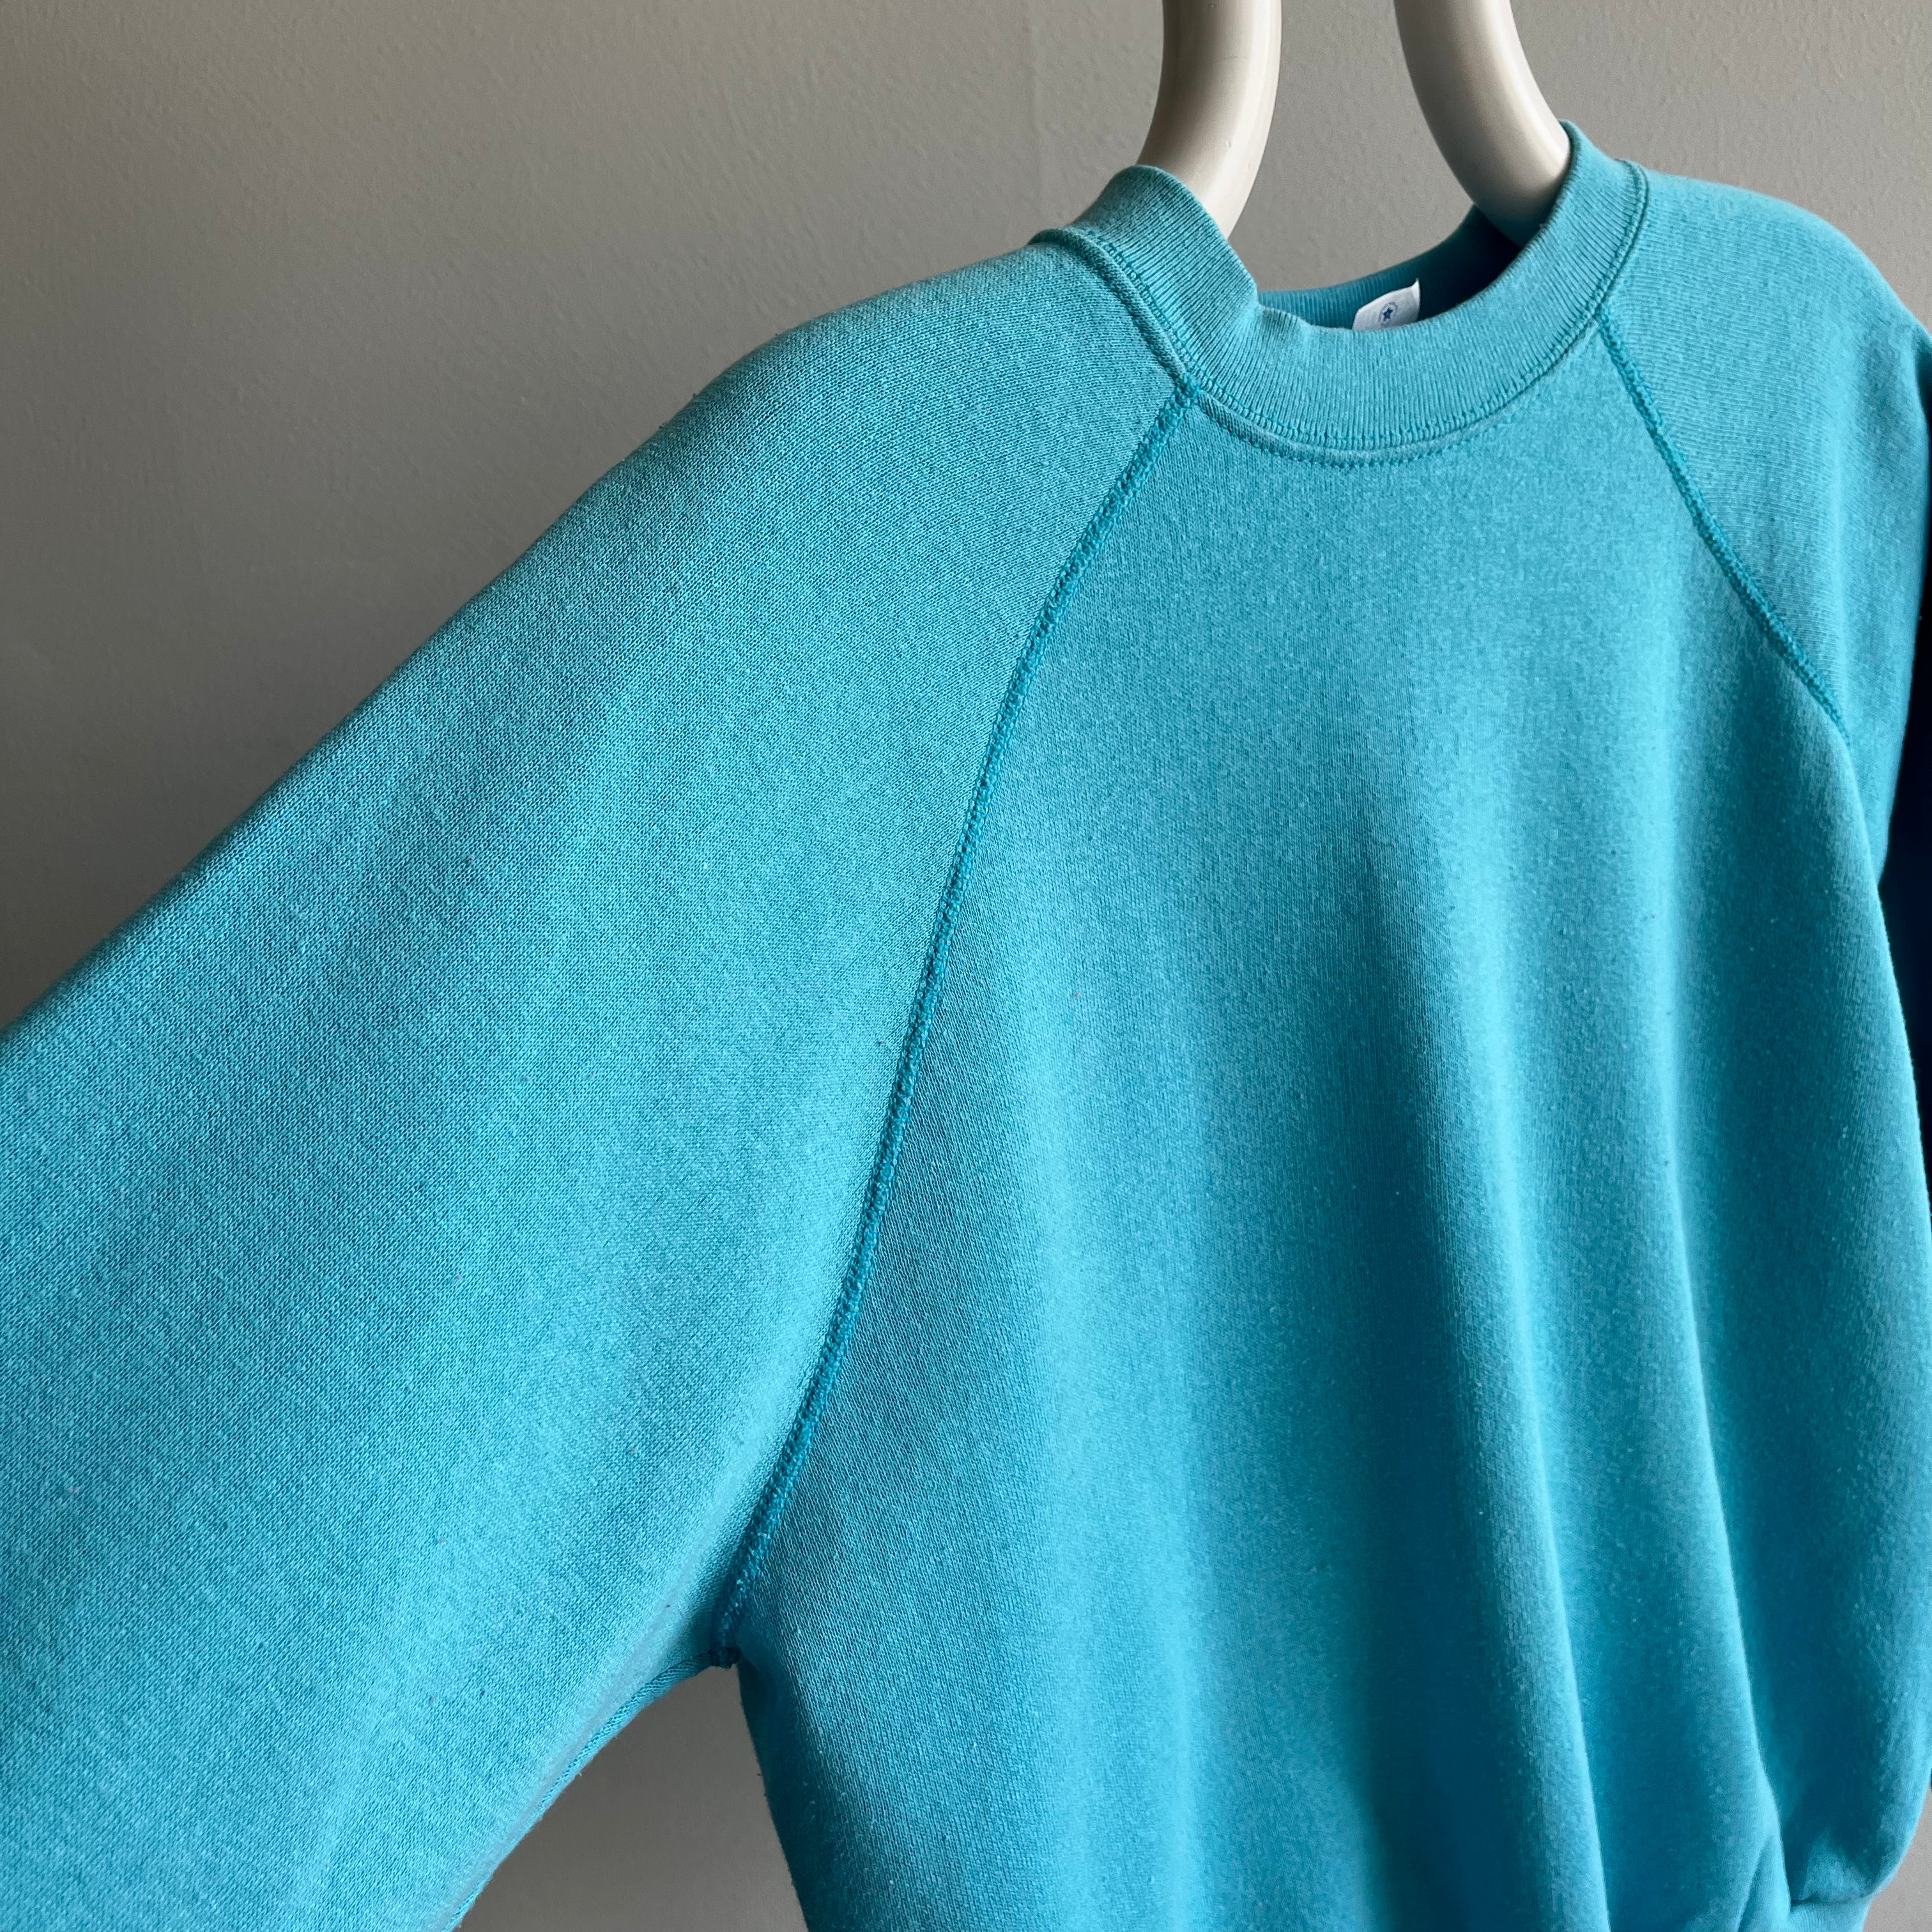 1980s Aqua Raglan Sweatshirt by Tultex